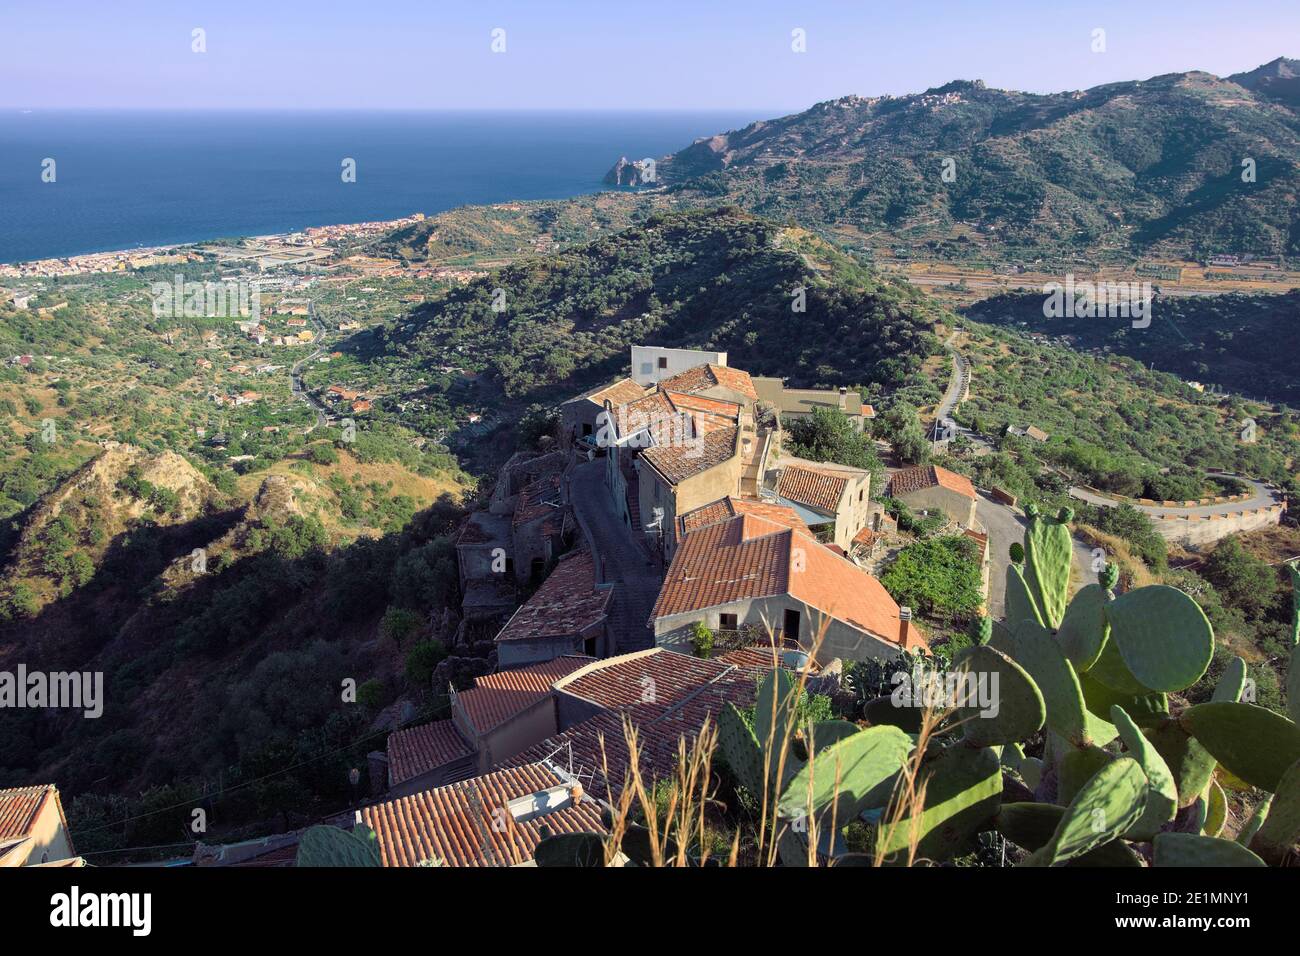 Vista sulla costa orientale della Sicilia dalla città di Savoca sulle colline siciliane, tetti in tegole, paesaggio collinare coperto di vegetazione e mare blu Foto Stock